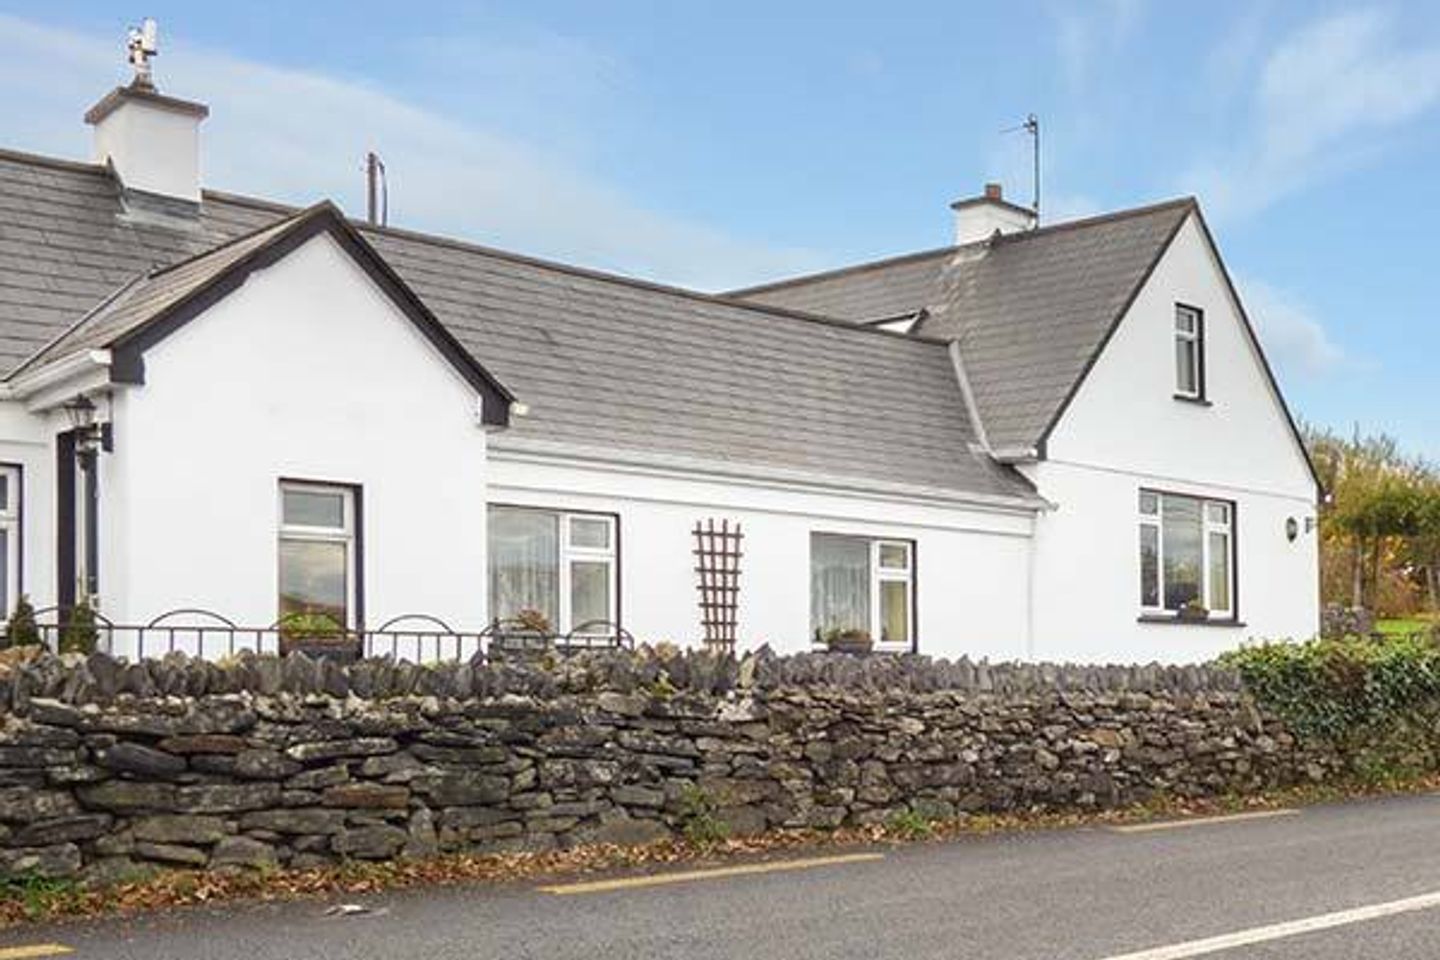 Ref. 15159 Laurel Lodge, Laurel Lodge, Letterfrack, Co. Galway